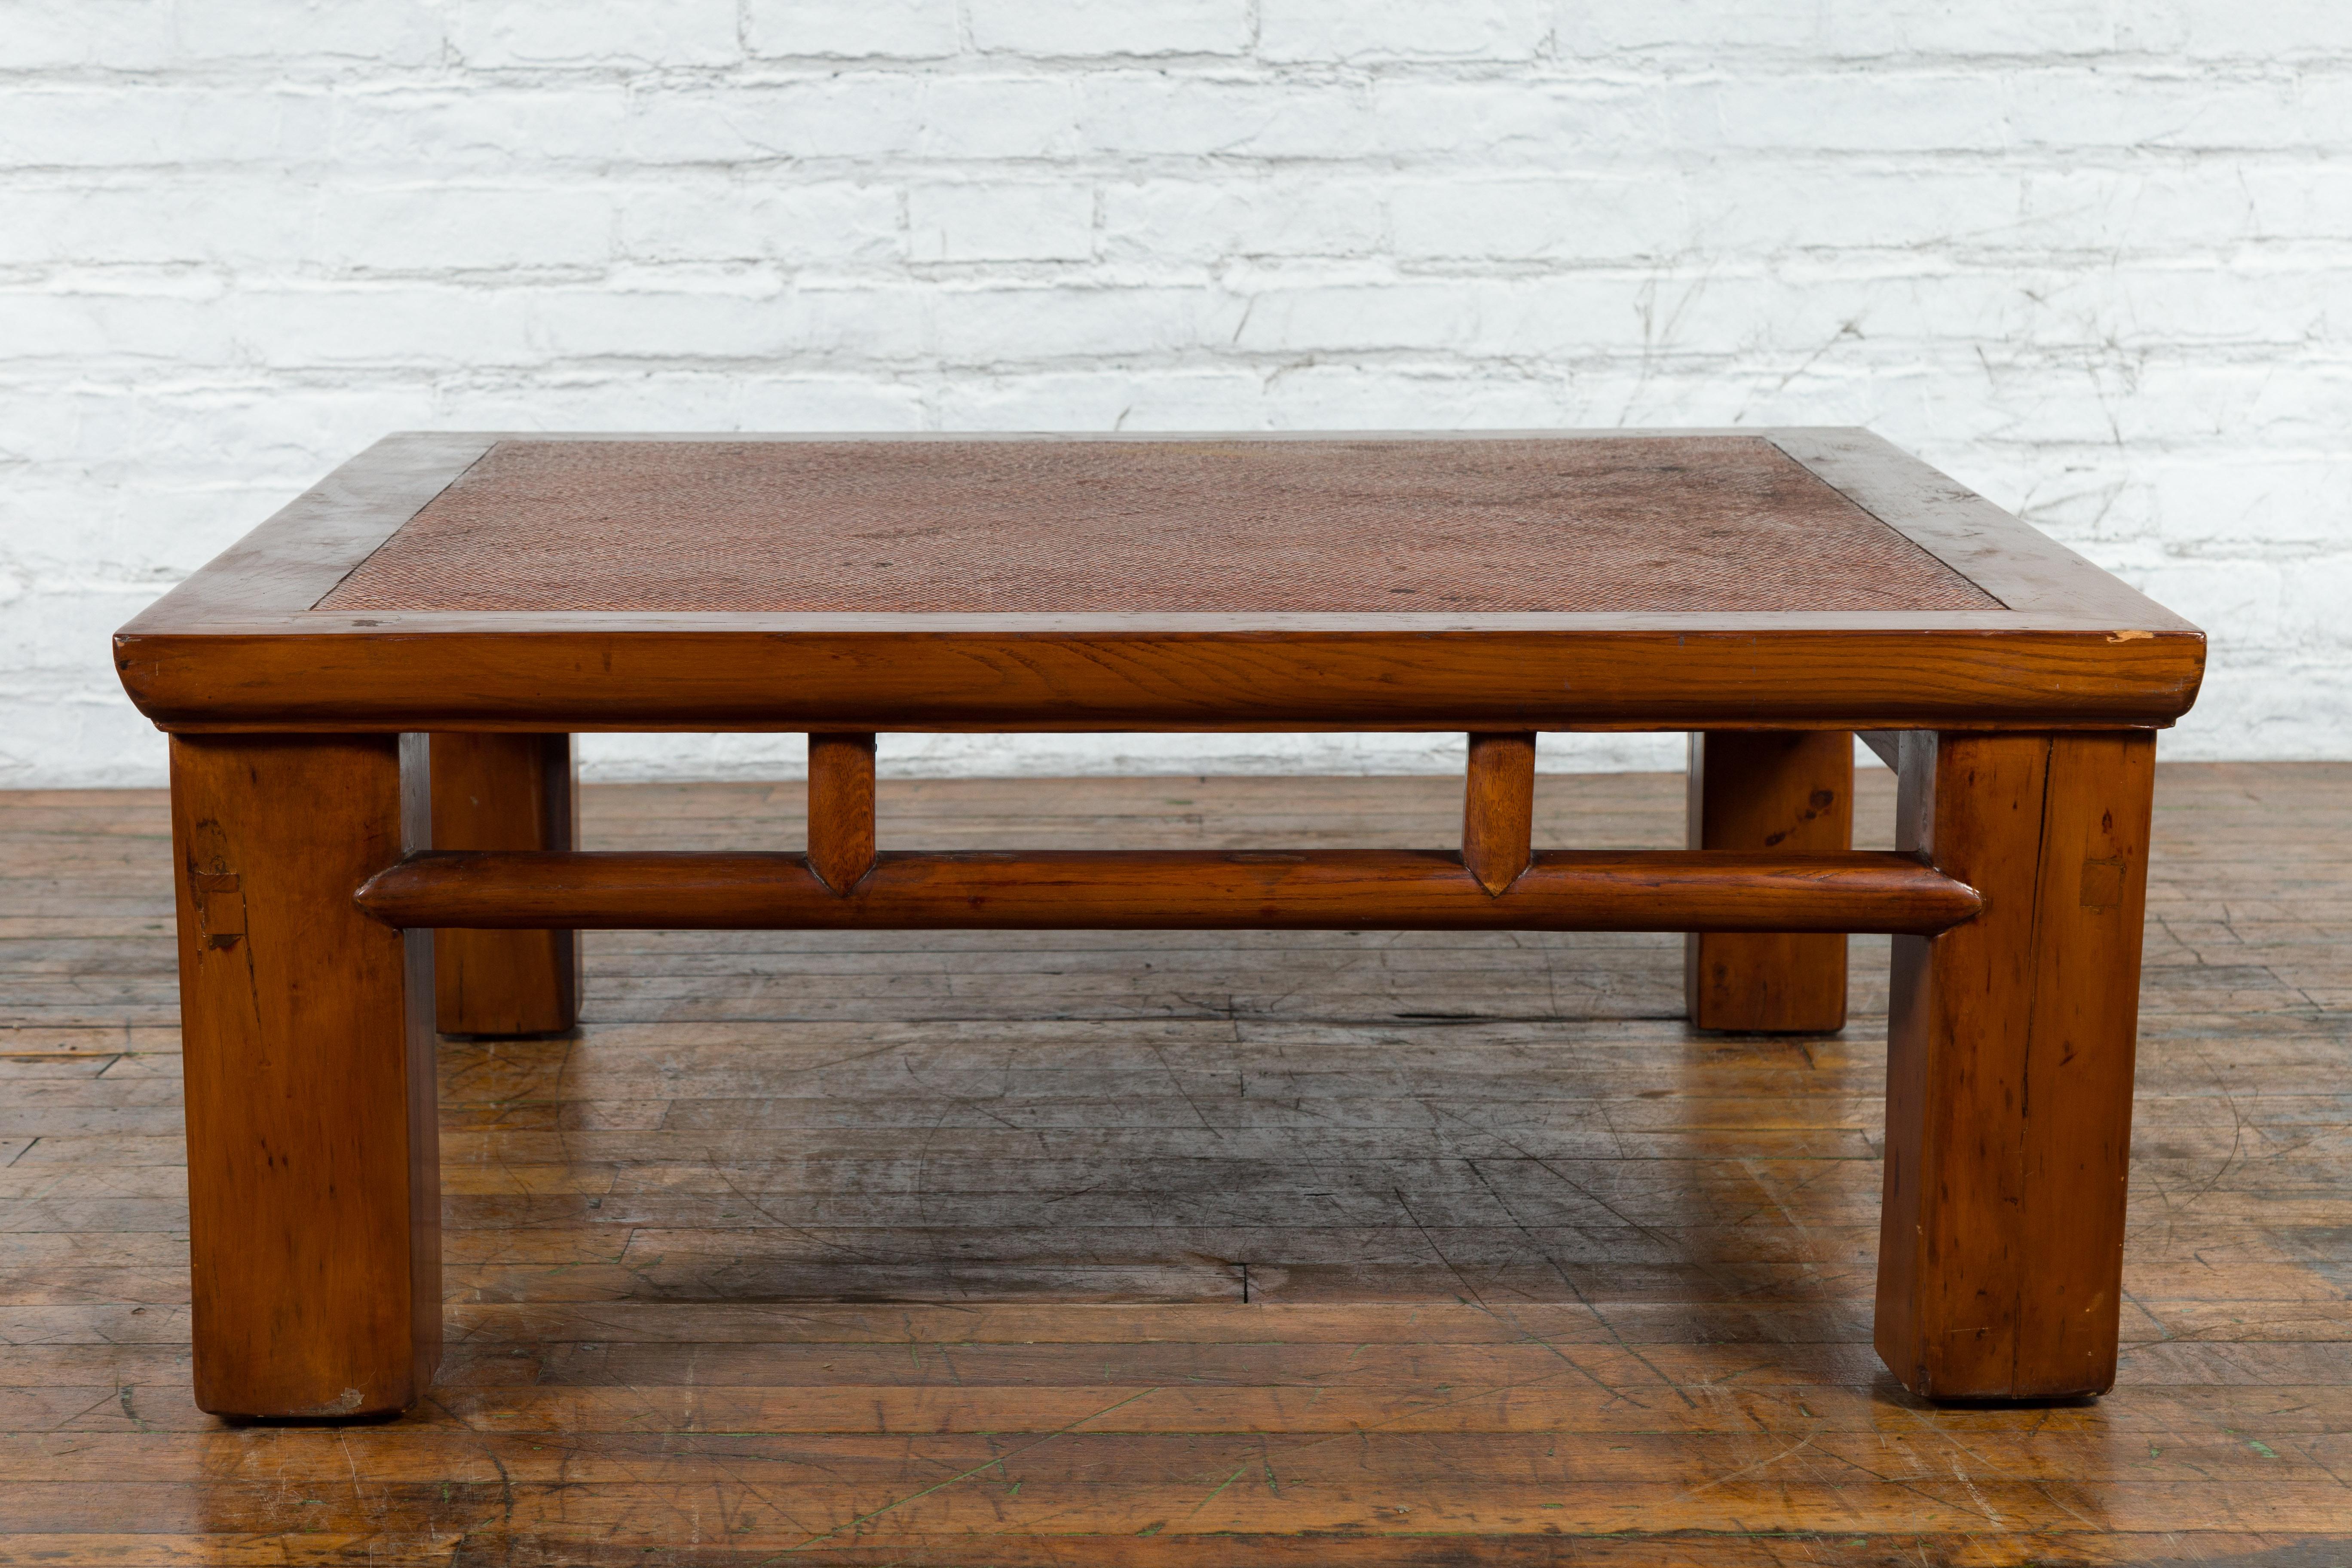 Table basse en bois d'orme datant de la dynastie Qing du 19ème siècle, avec un plateau en rotin tissé à la main, des pieds carrés, un tablier ouvert et des motifs de piliers. Créée en Chine, cette table basse a été fabriquée à l'origine à partir